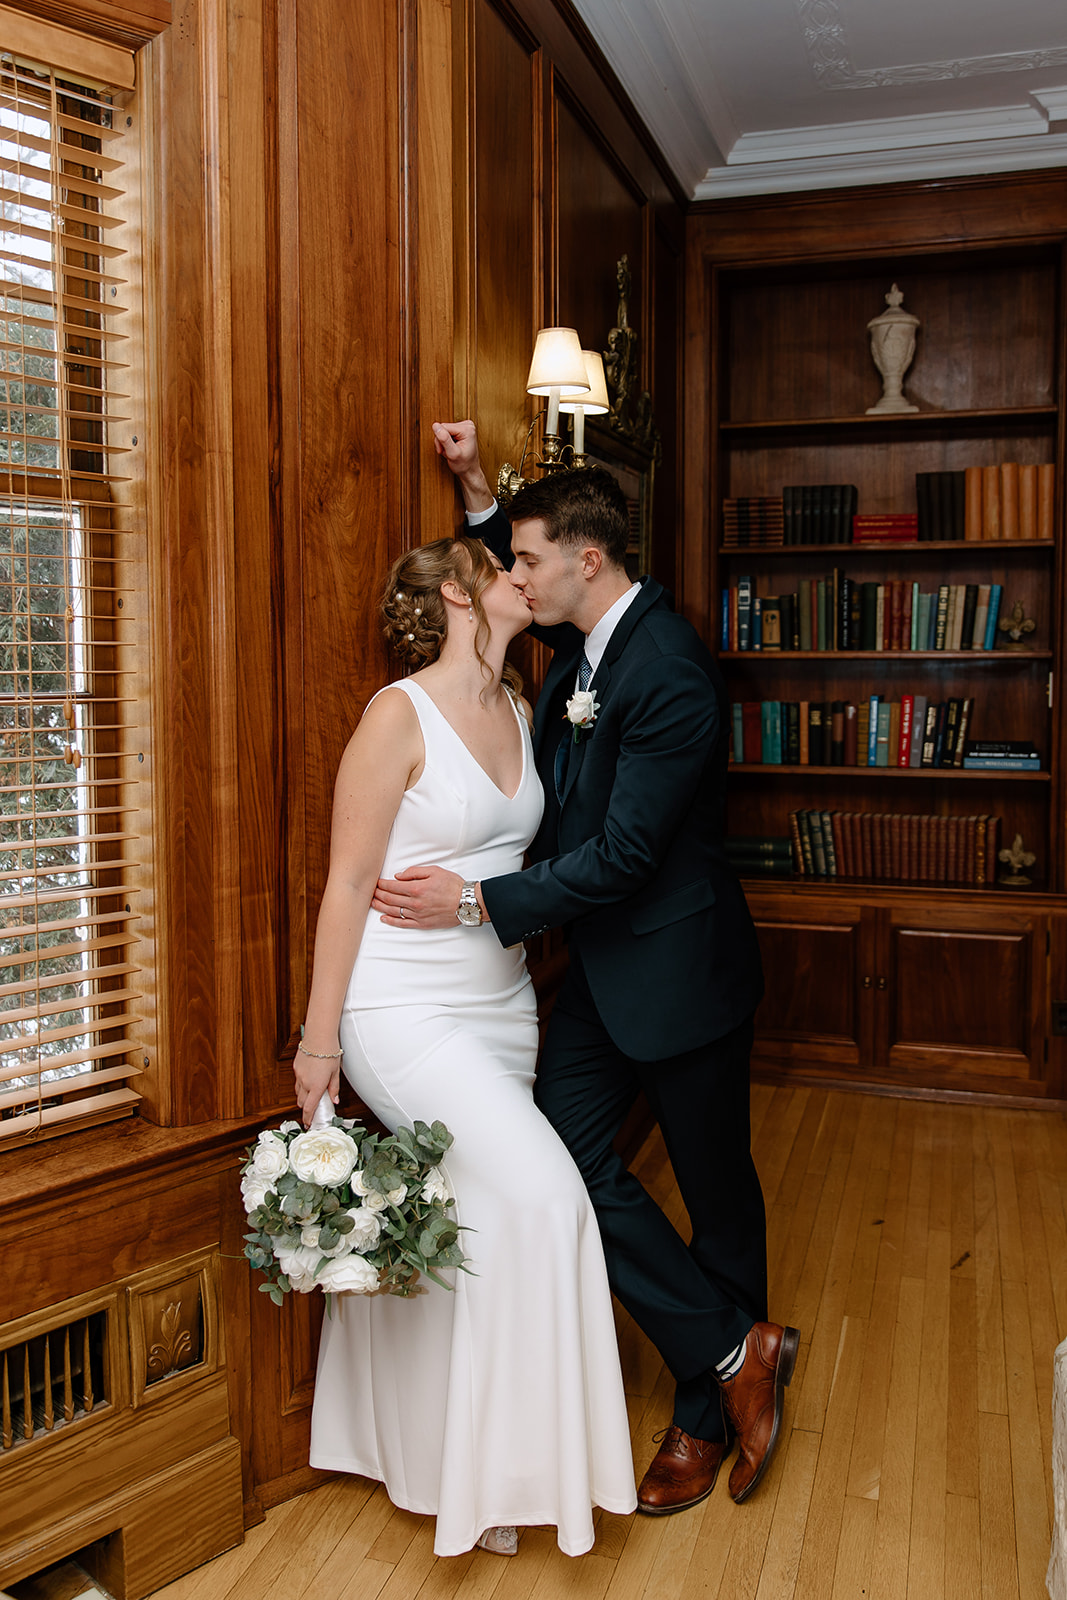 Bride and groom in front of bookshelf